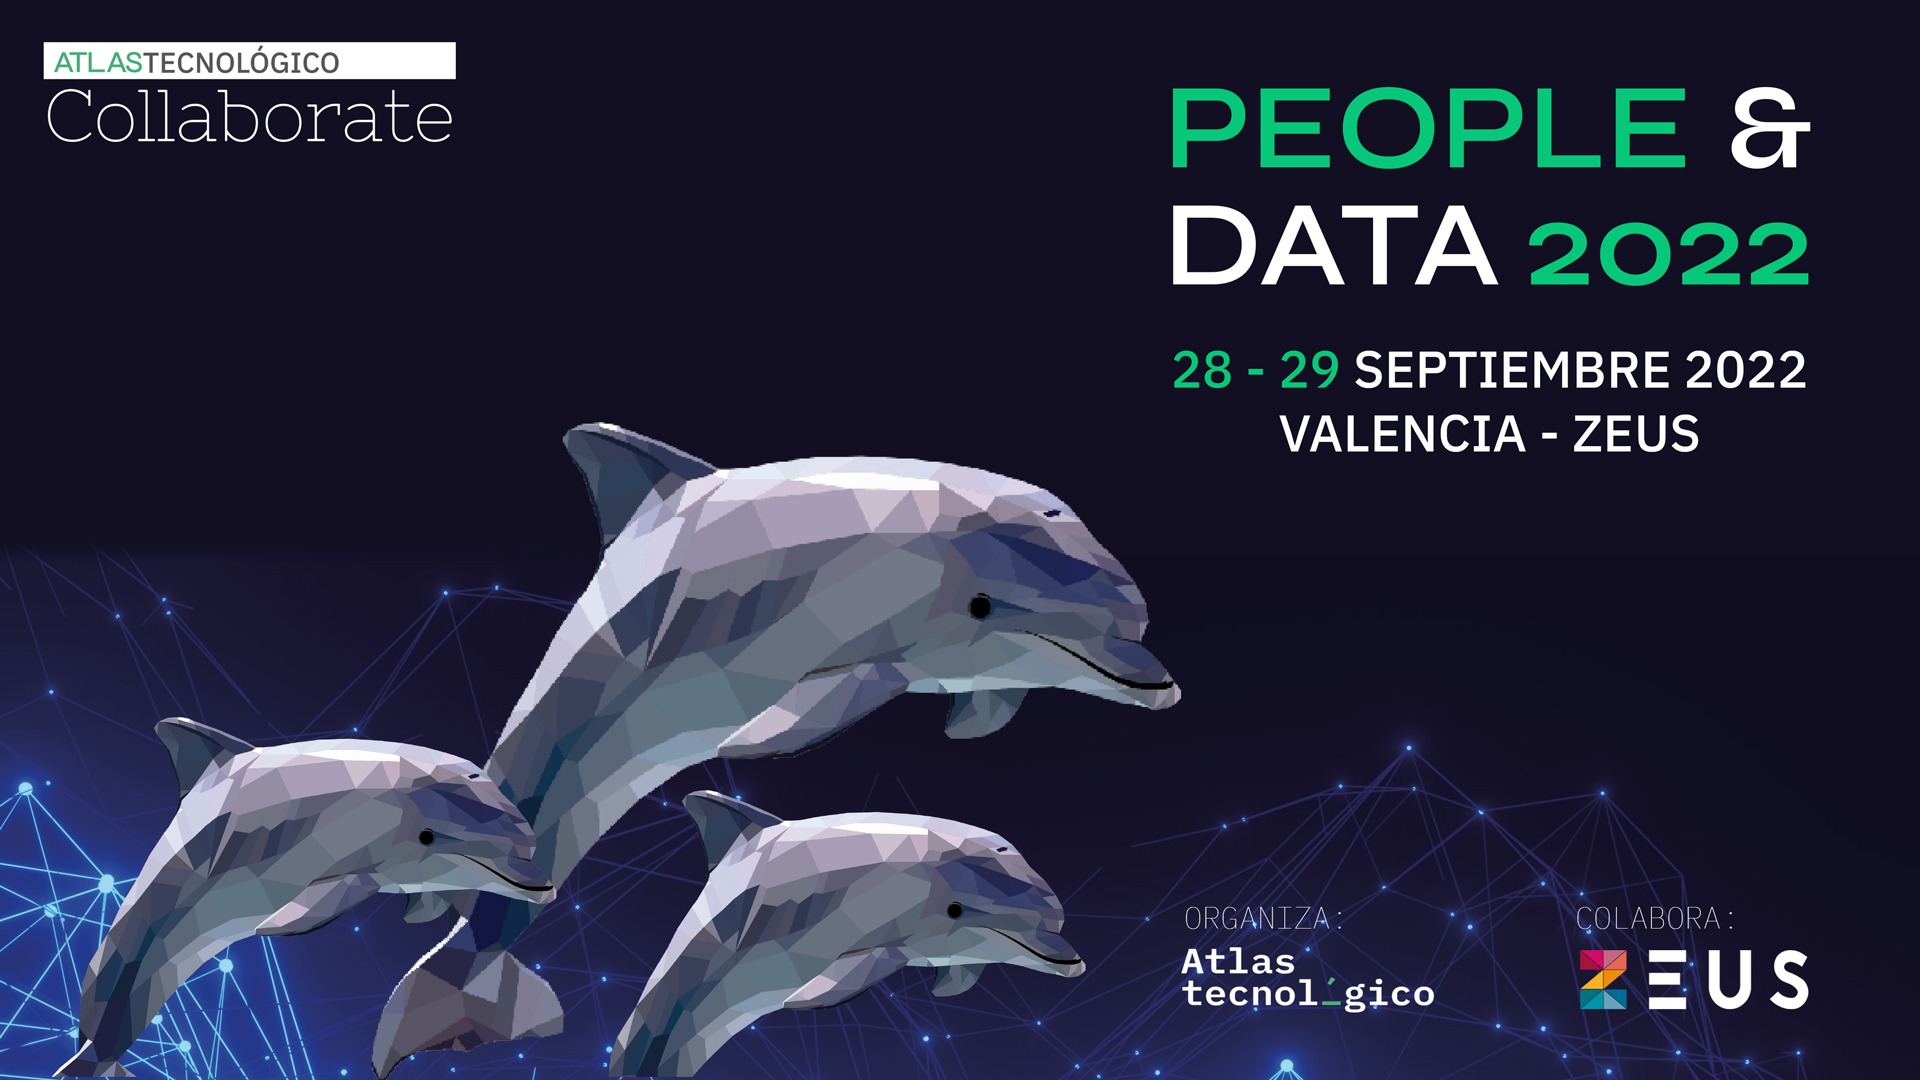 Atlas Tecnológico y ZEUS se alían para el evento Collaborate People & Data 2022 en la Marina de Valencia en septiembre